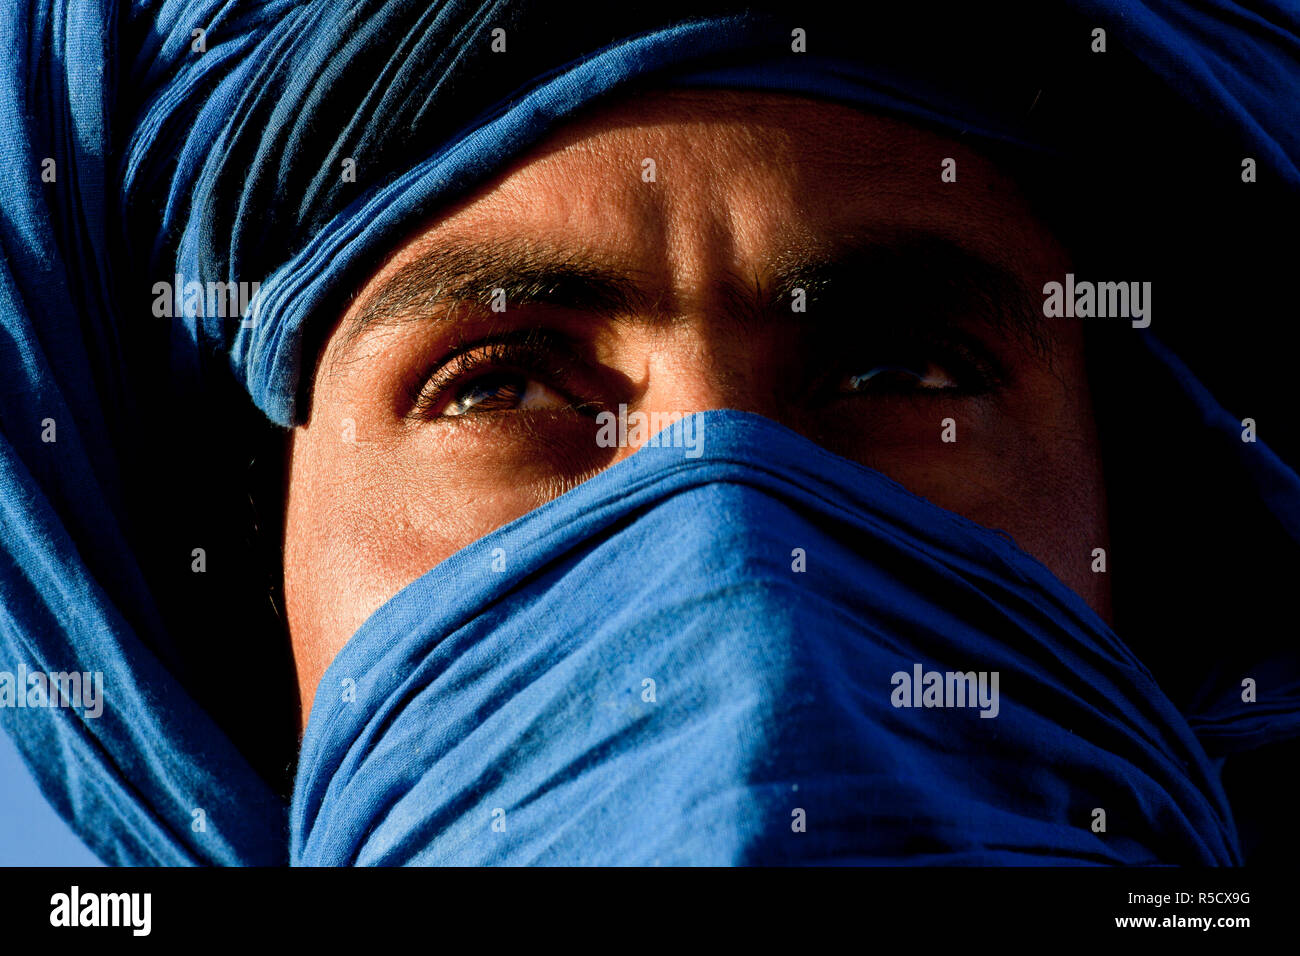 Homme touareg, Erg Chebbi, désert du Sahara, Maroc Banque D'Images